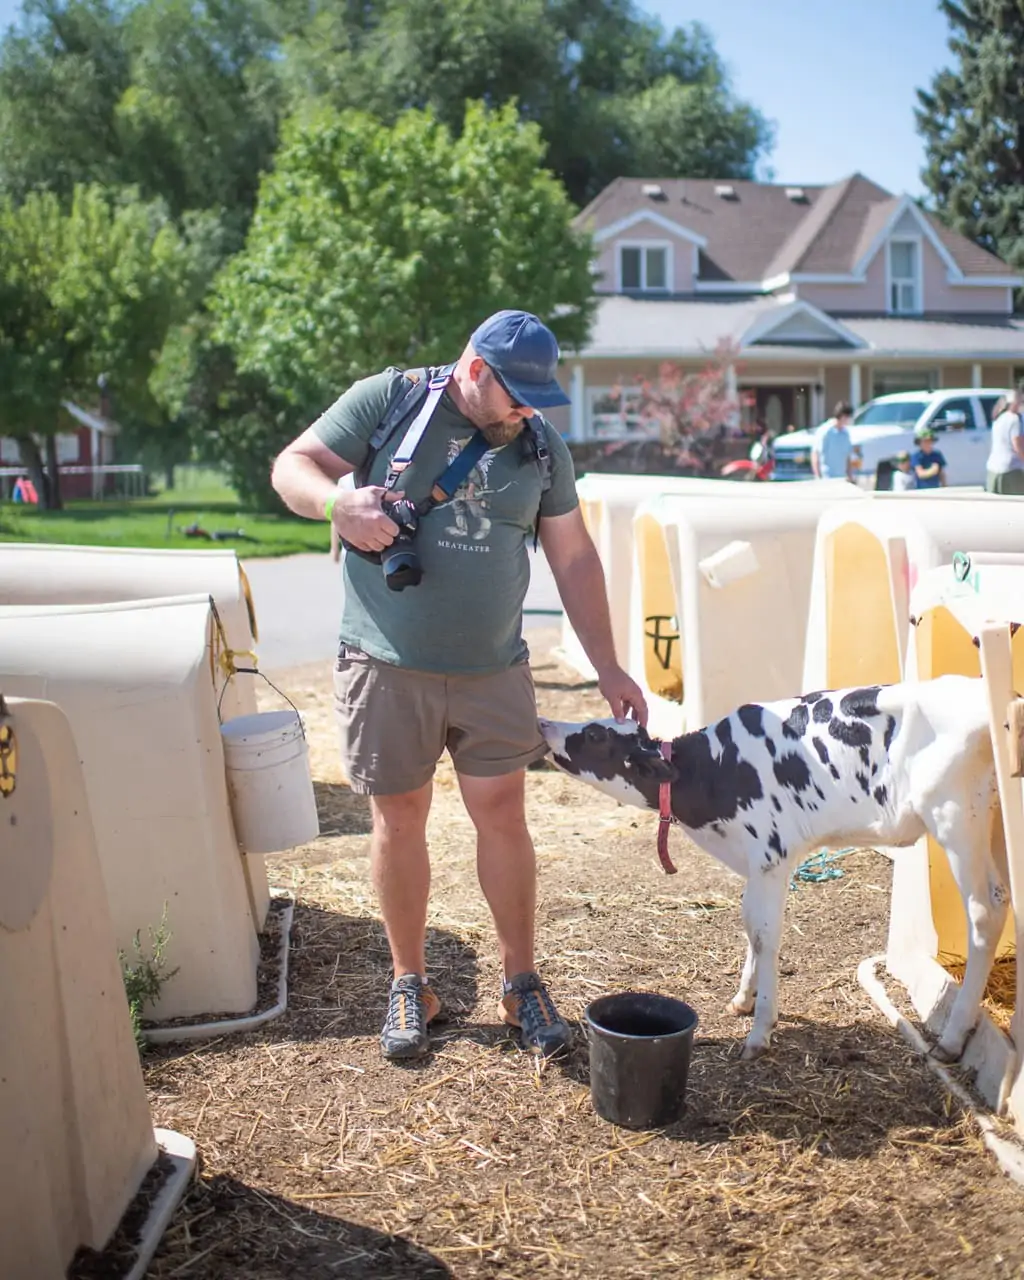 Man with camera petting cow in Utah